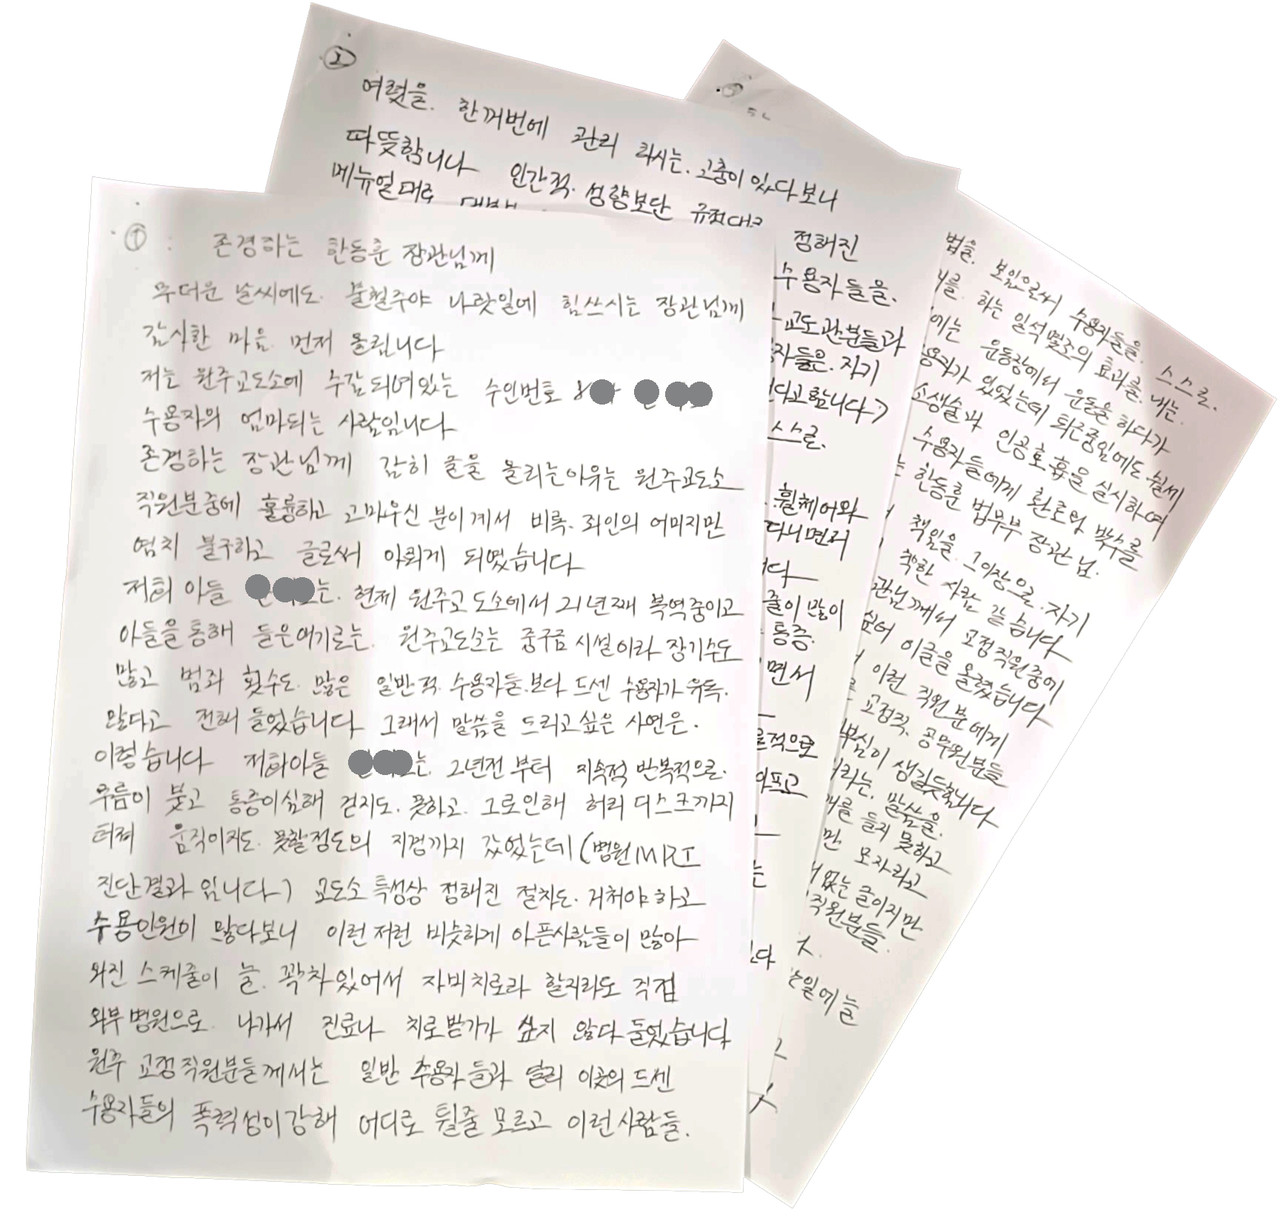 원주교도소 수용자의 어머니가 보내온 세 장의 손편지.